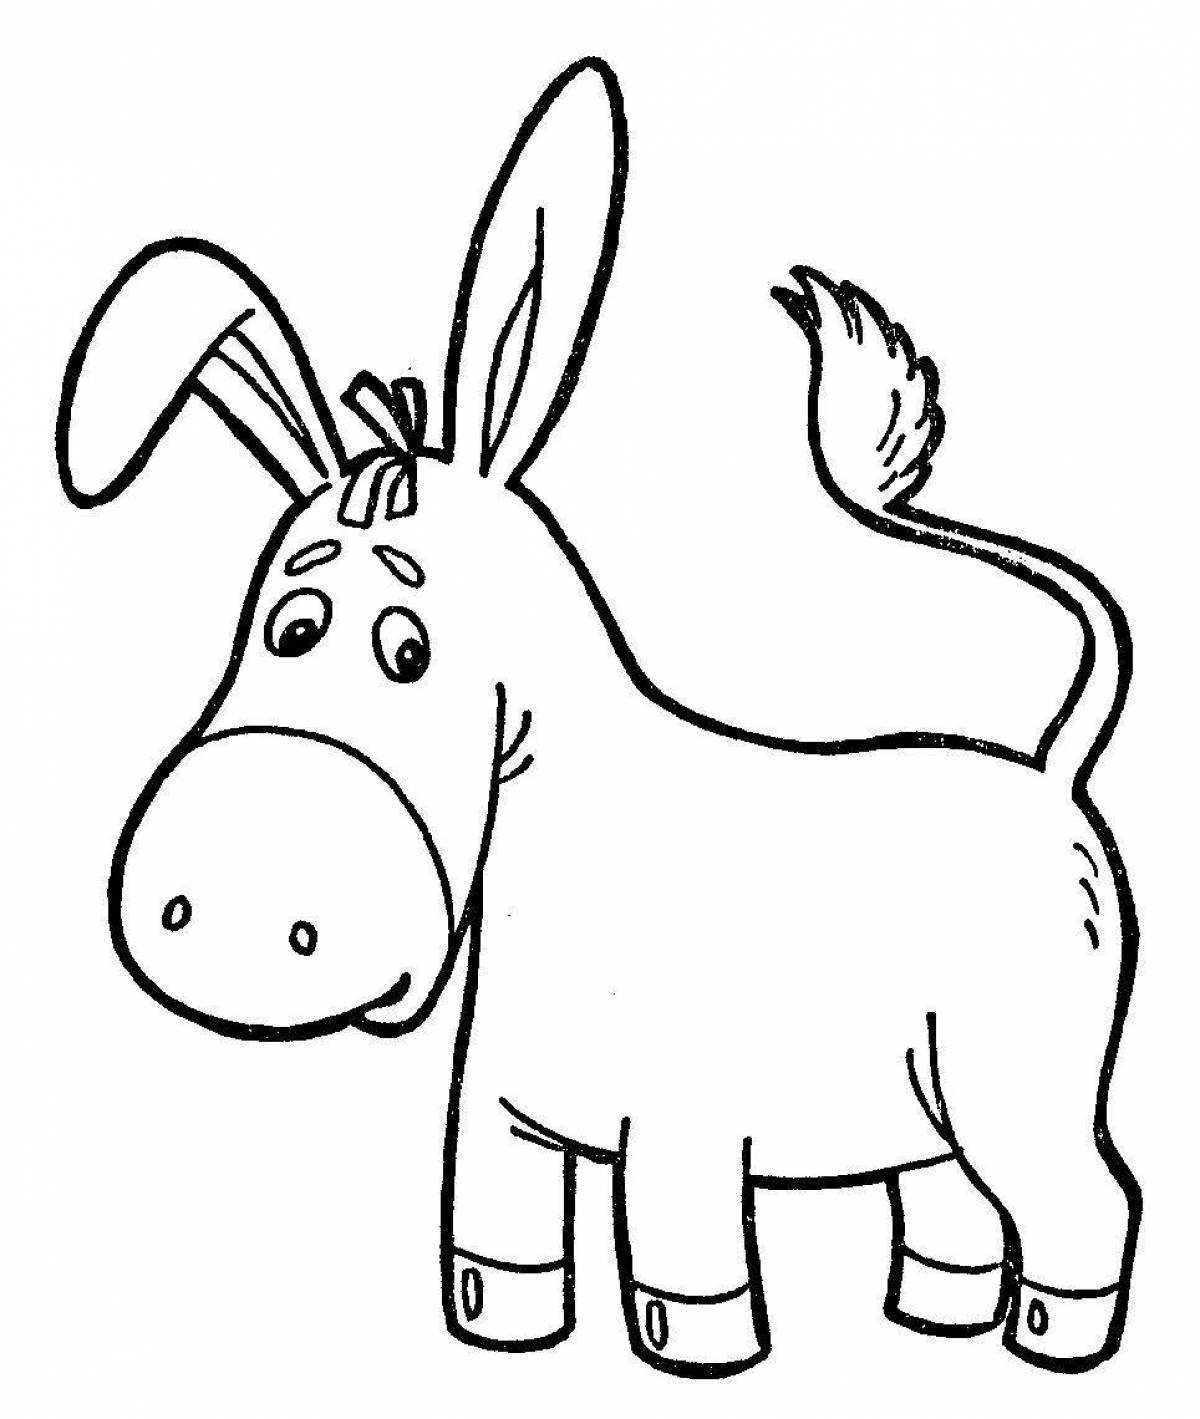 Violent donkey coloring for kids